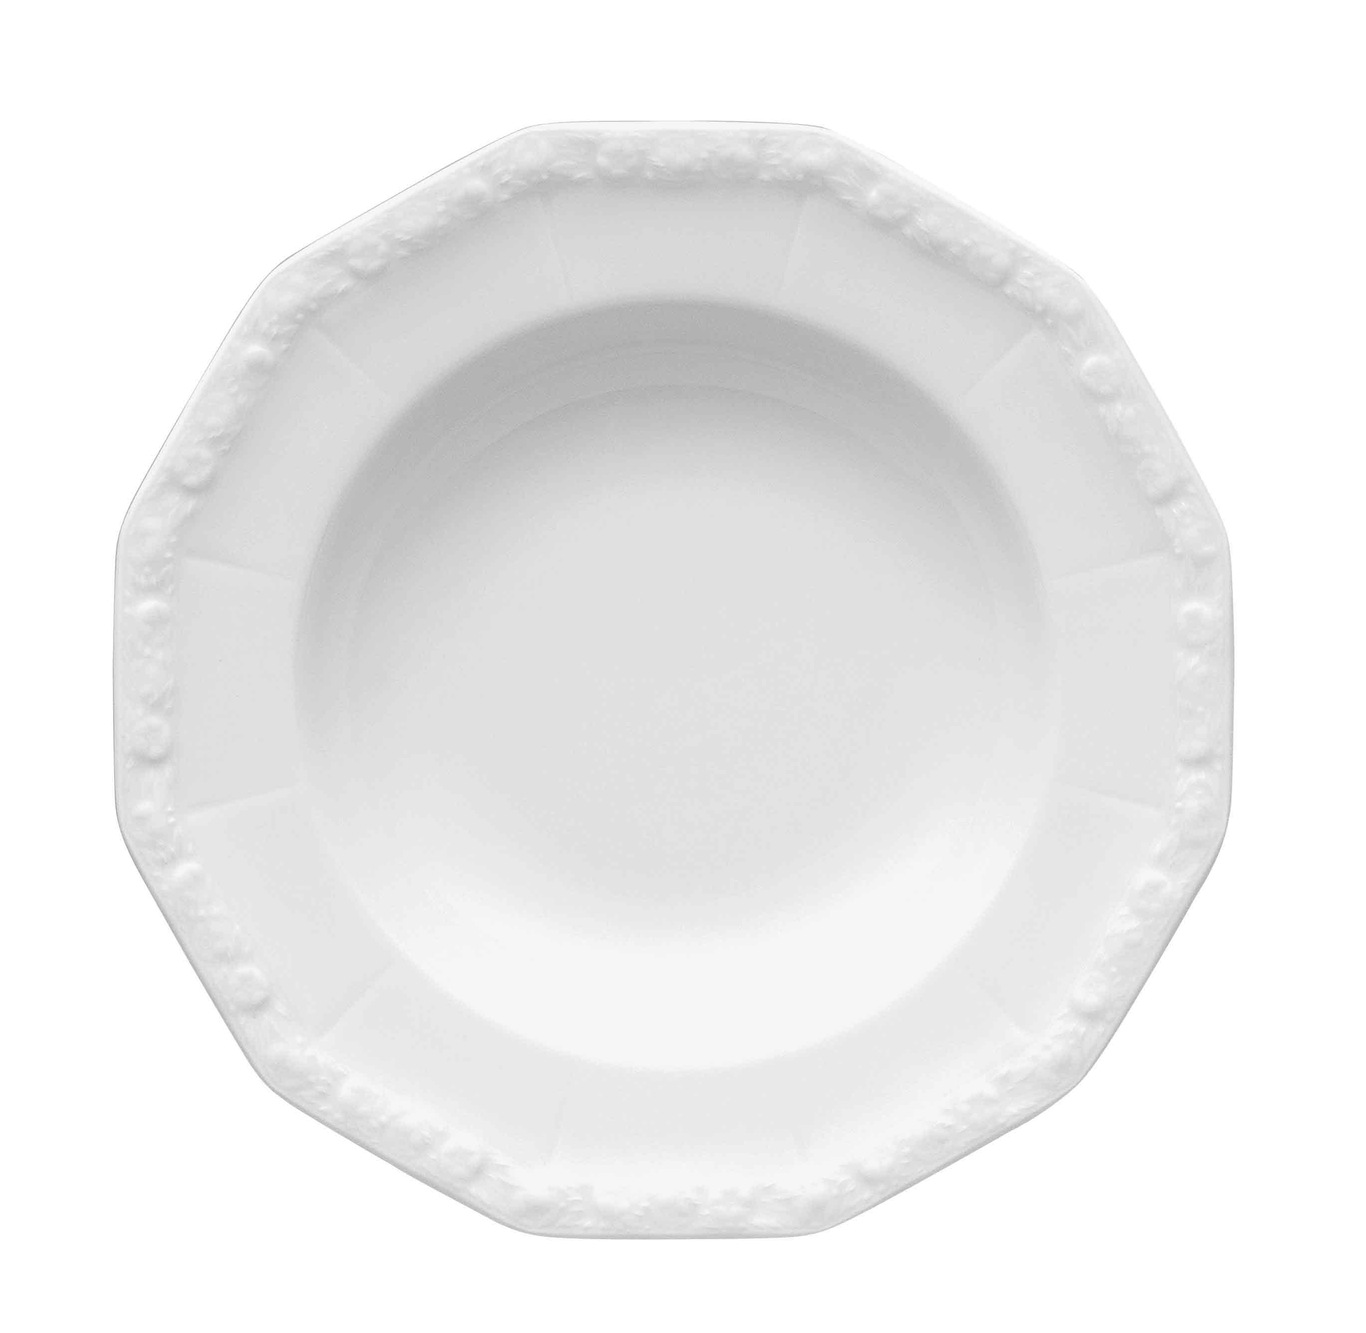 Maria Plate Deep 21 cm, White